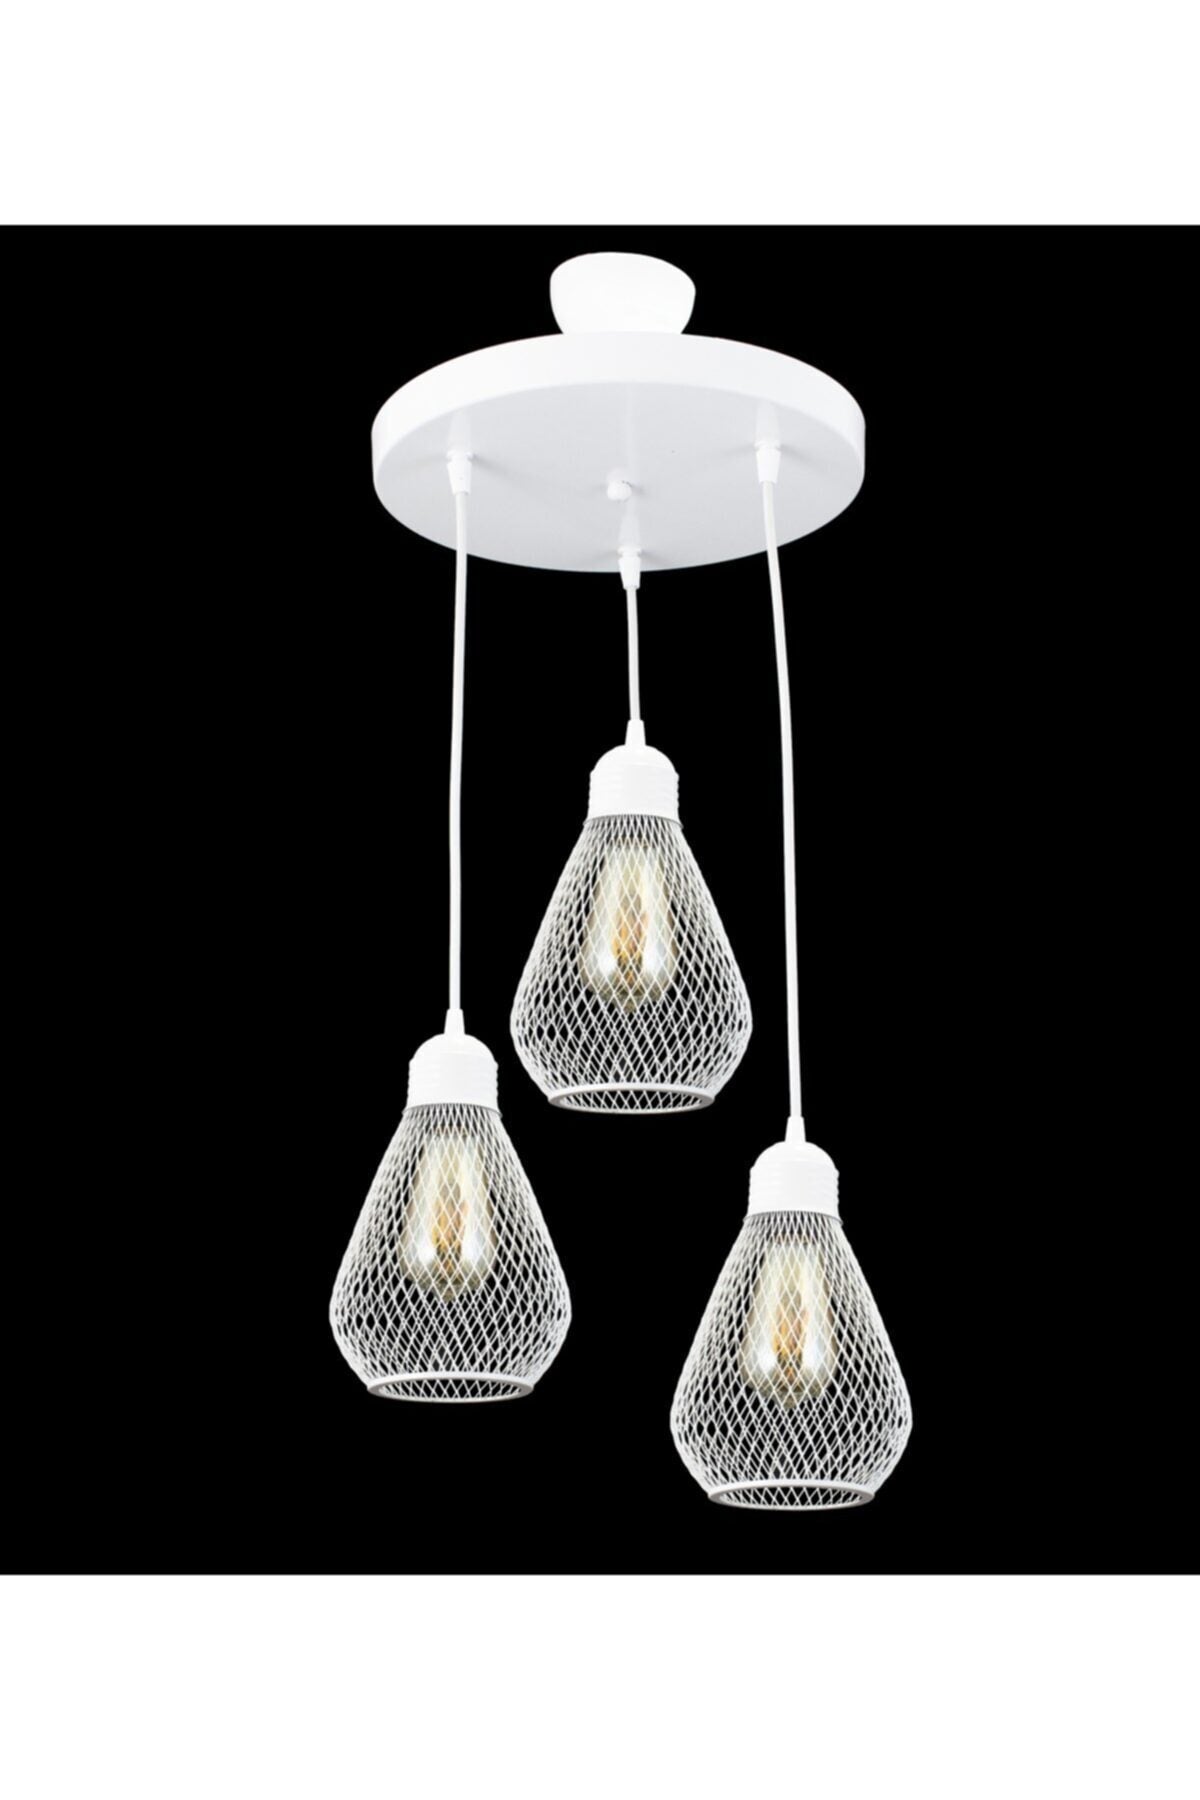 Bulb model white wrought iron modern pendant chandelier